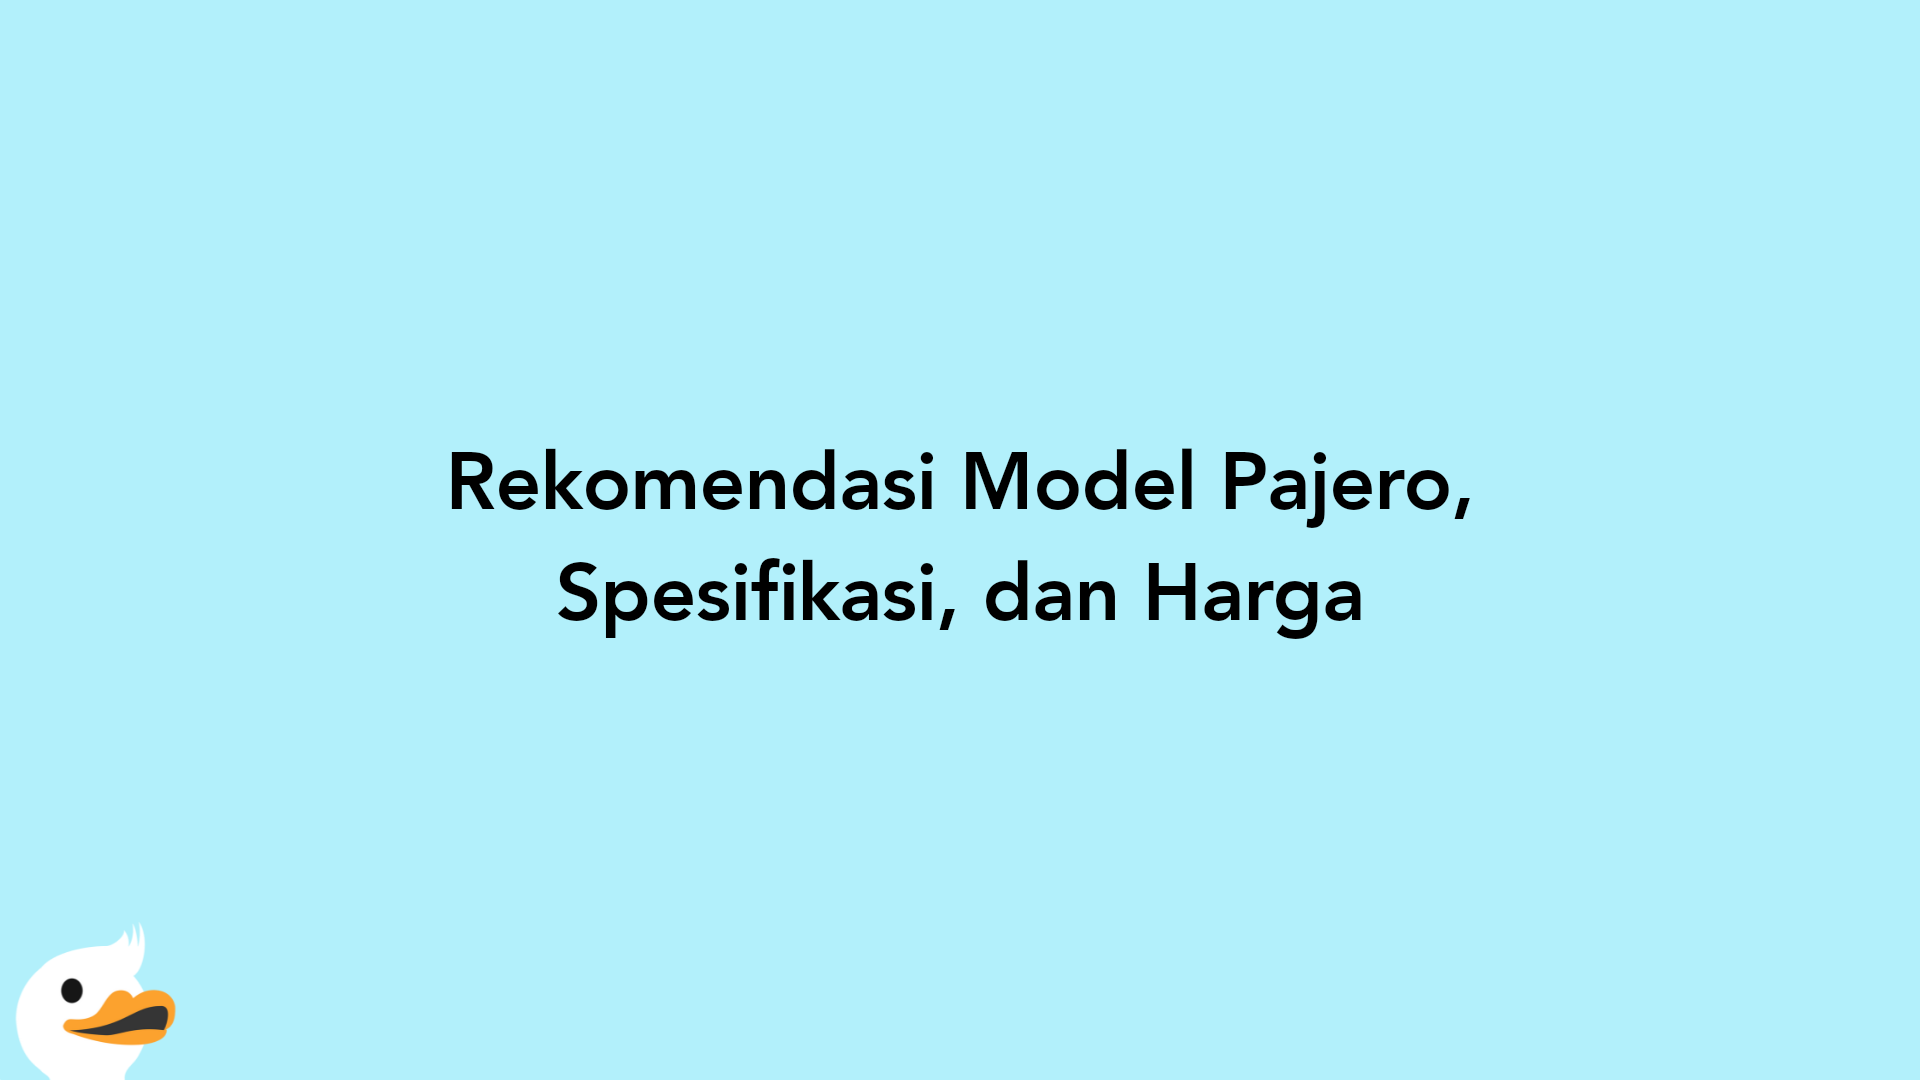 Rekomendasi Model Pajero, Spesifikasi, dan Harga